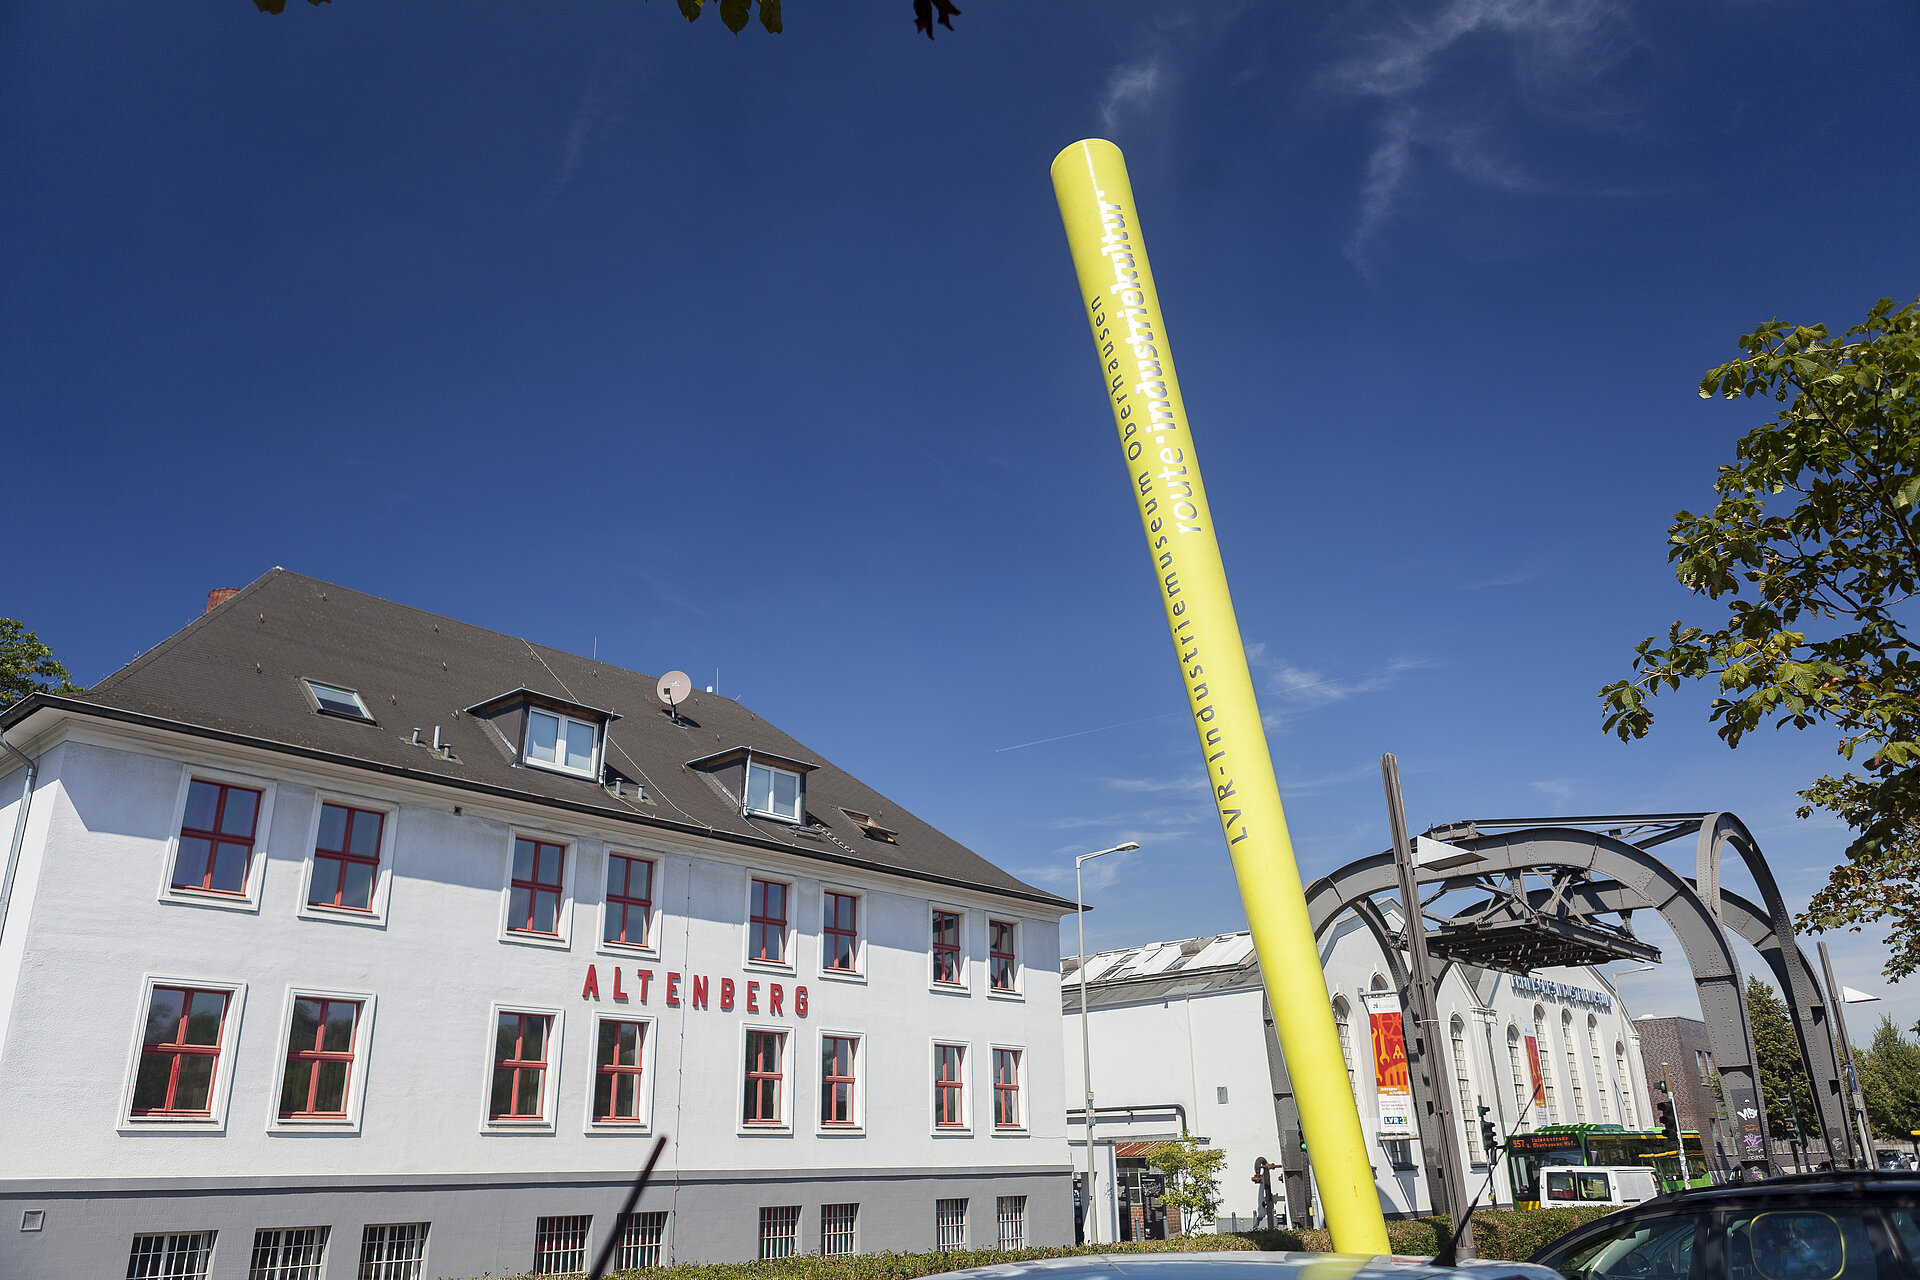 Das Signalobjekt vor der Zinkfabrik Altenberg zeigt an, dass es sich hier um einen Ankerpunkt auf der Route der Industriekultur handelt.